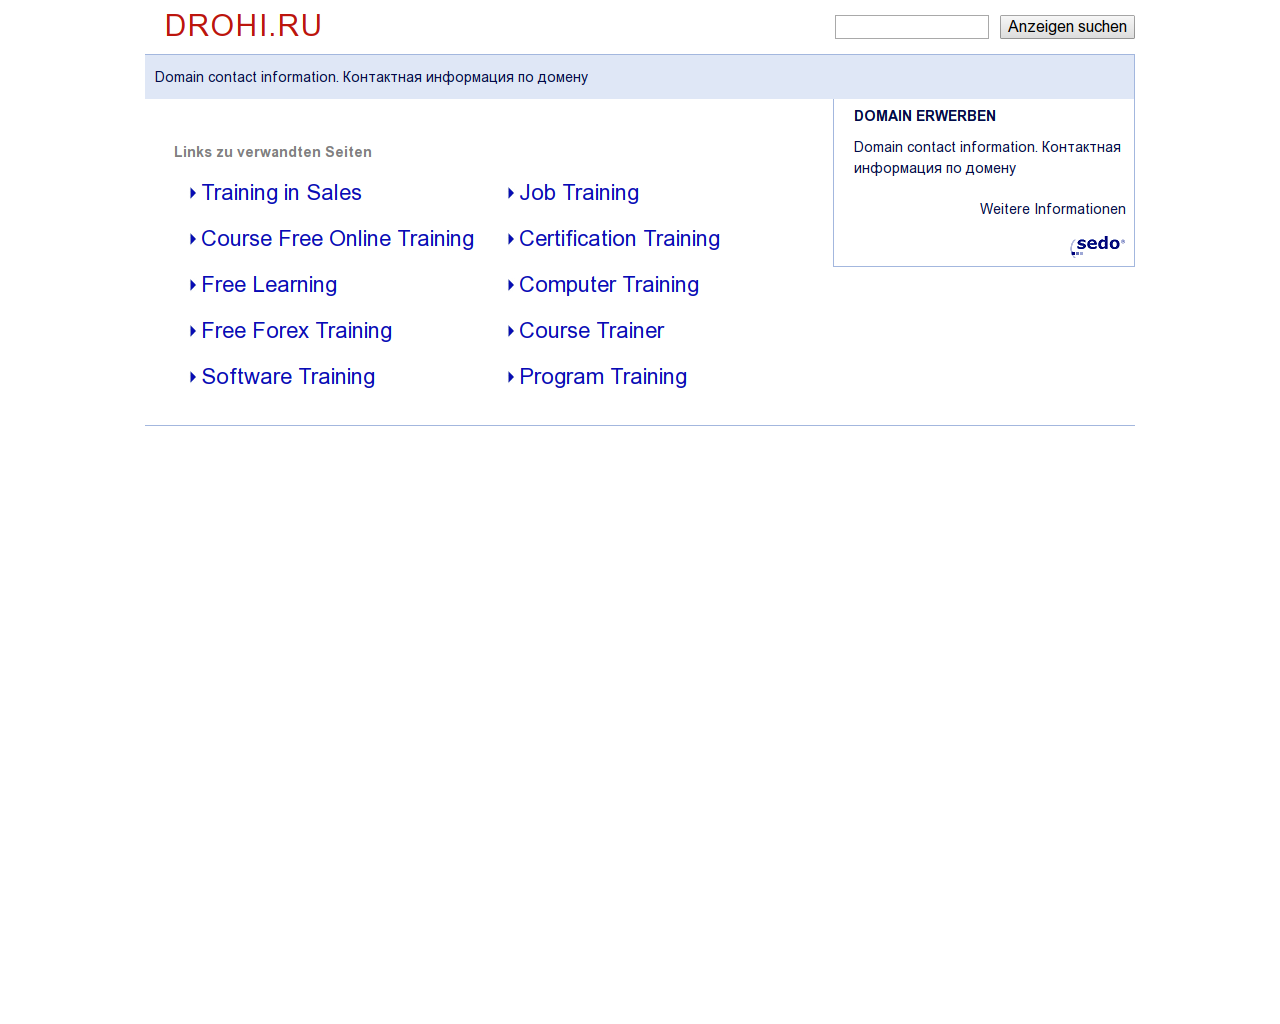 Изображение сайта drohi.ru в разрешении 1280x1024